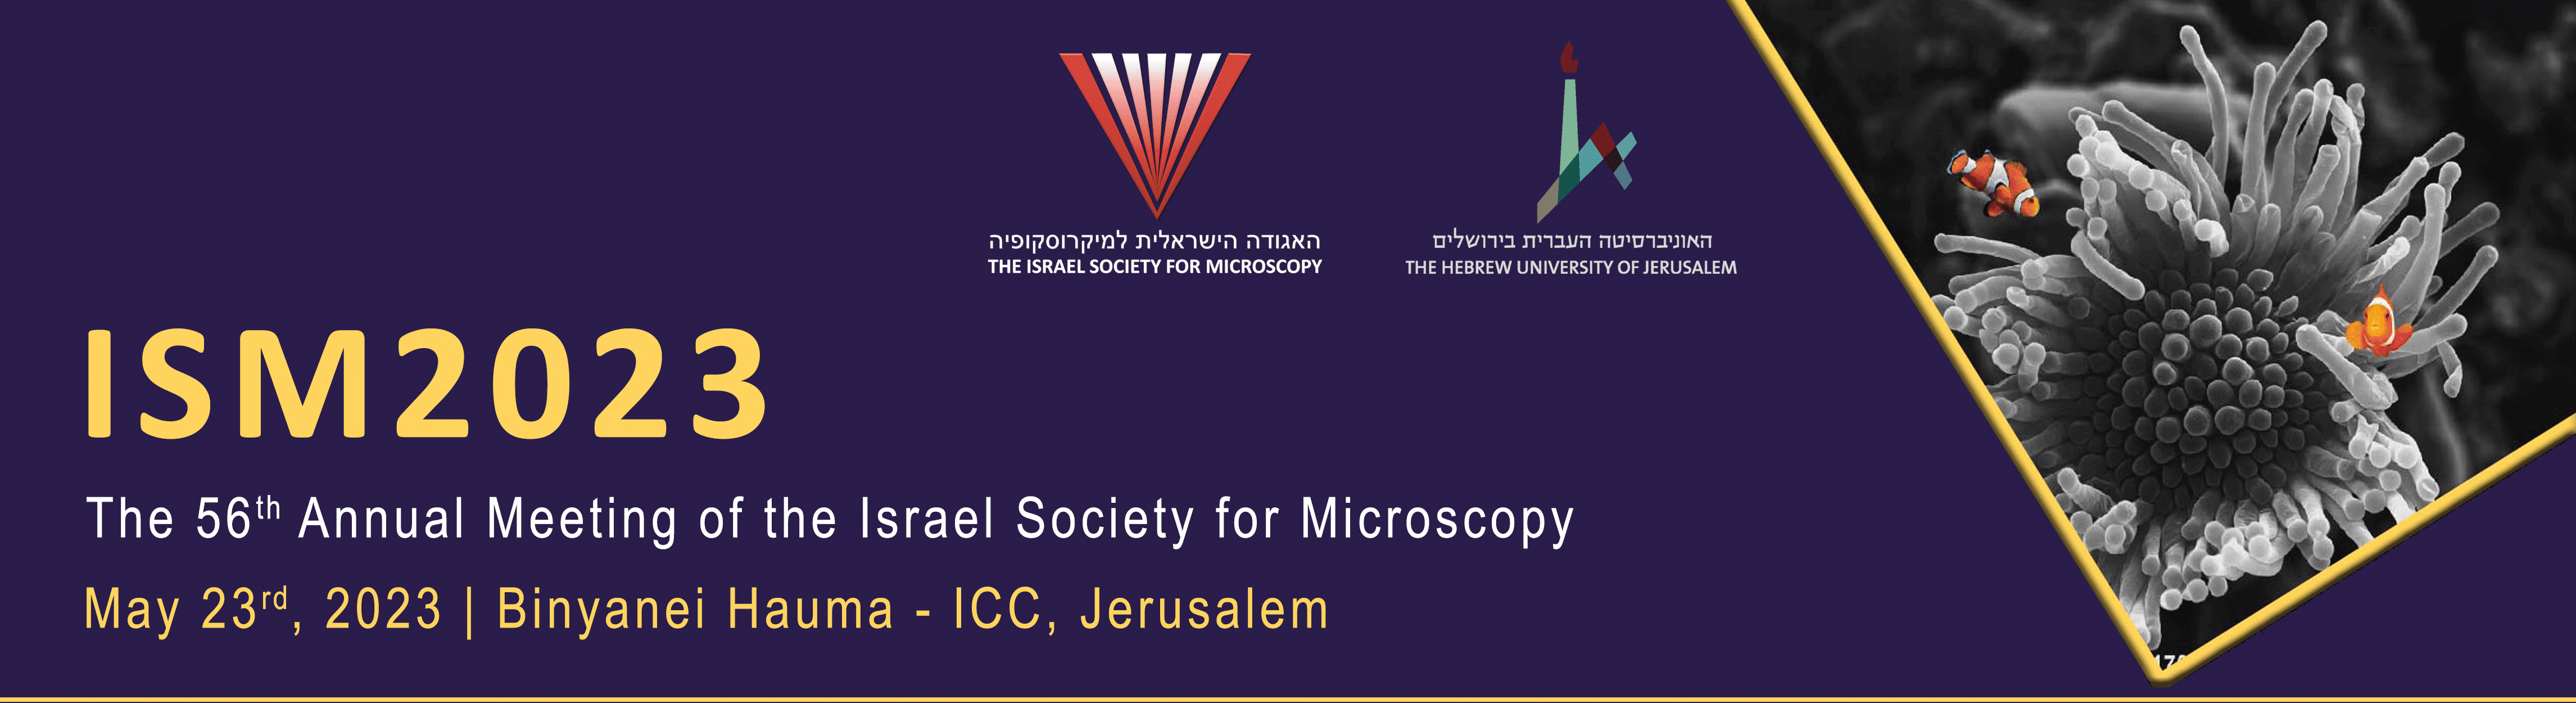 ISM Jerusalem 2023 (Microscopy)